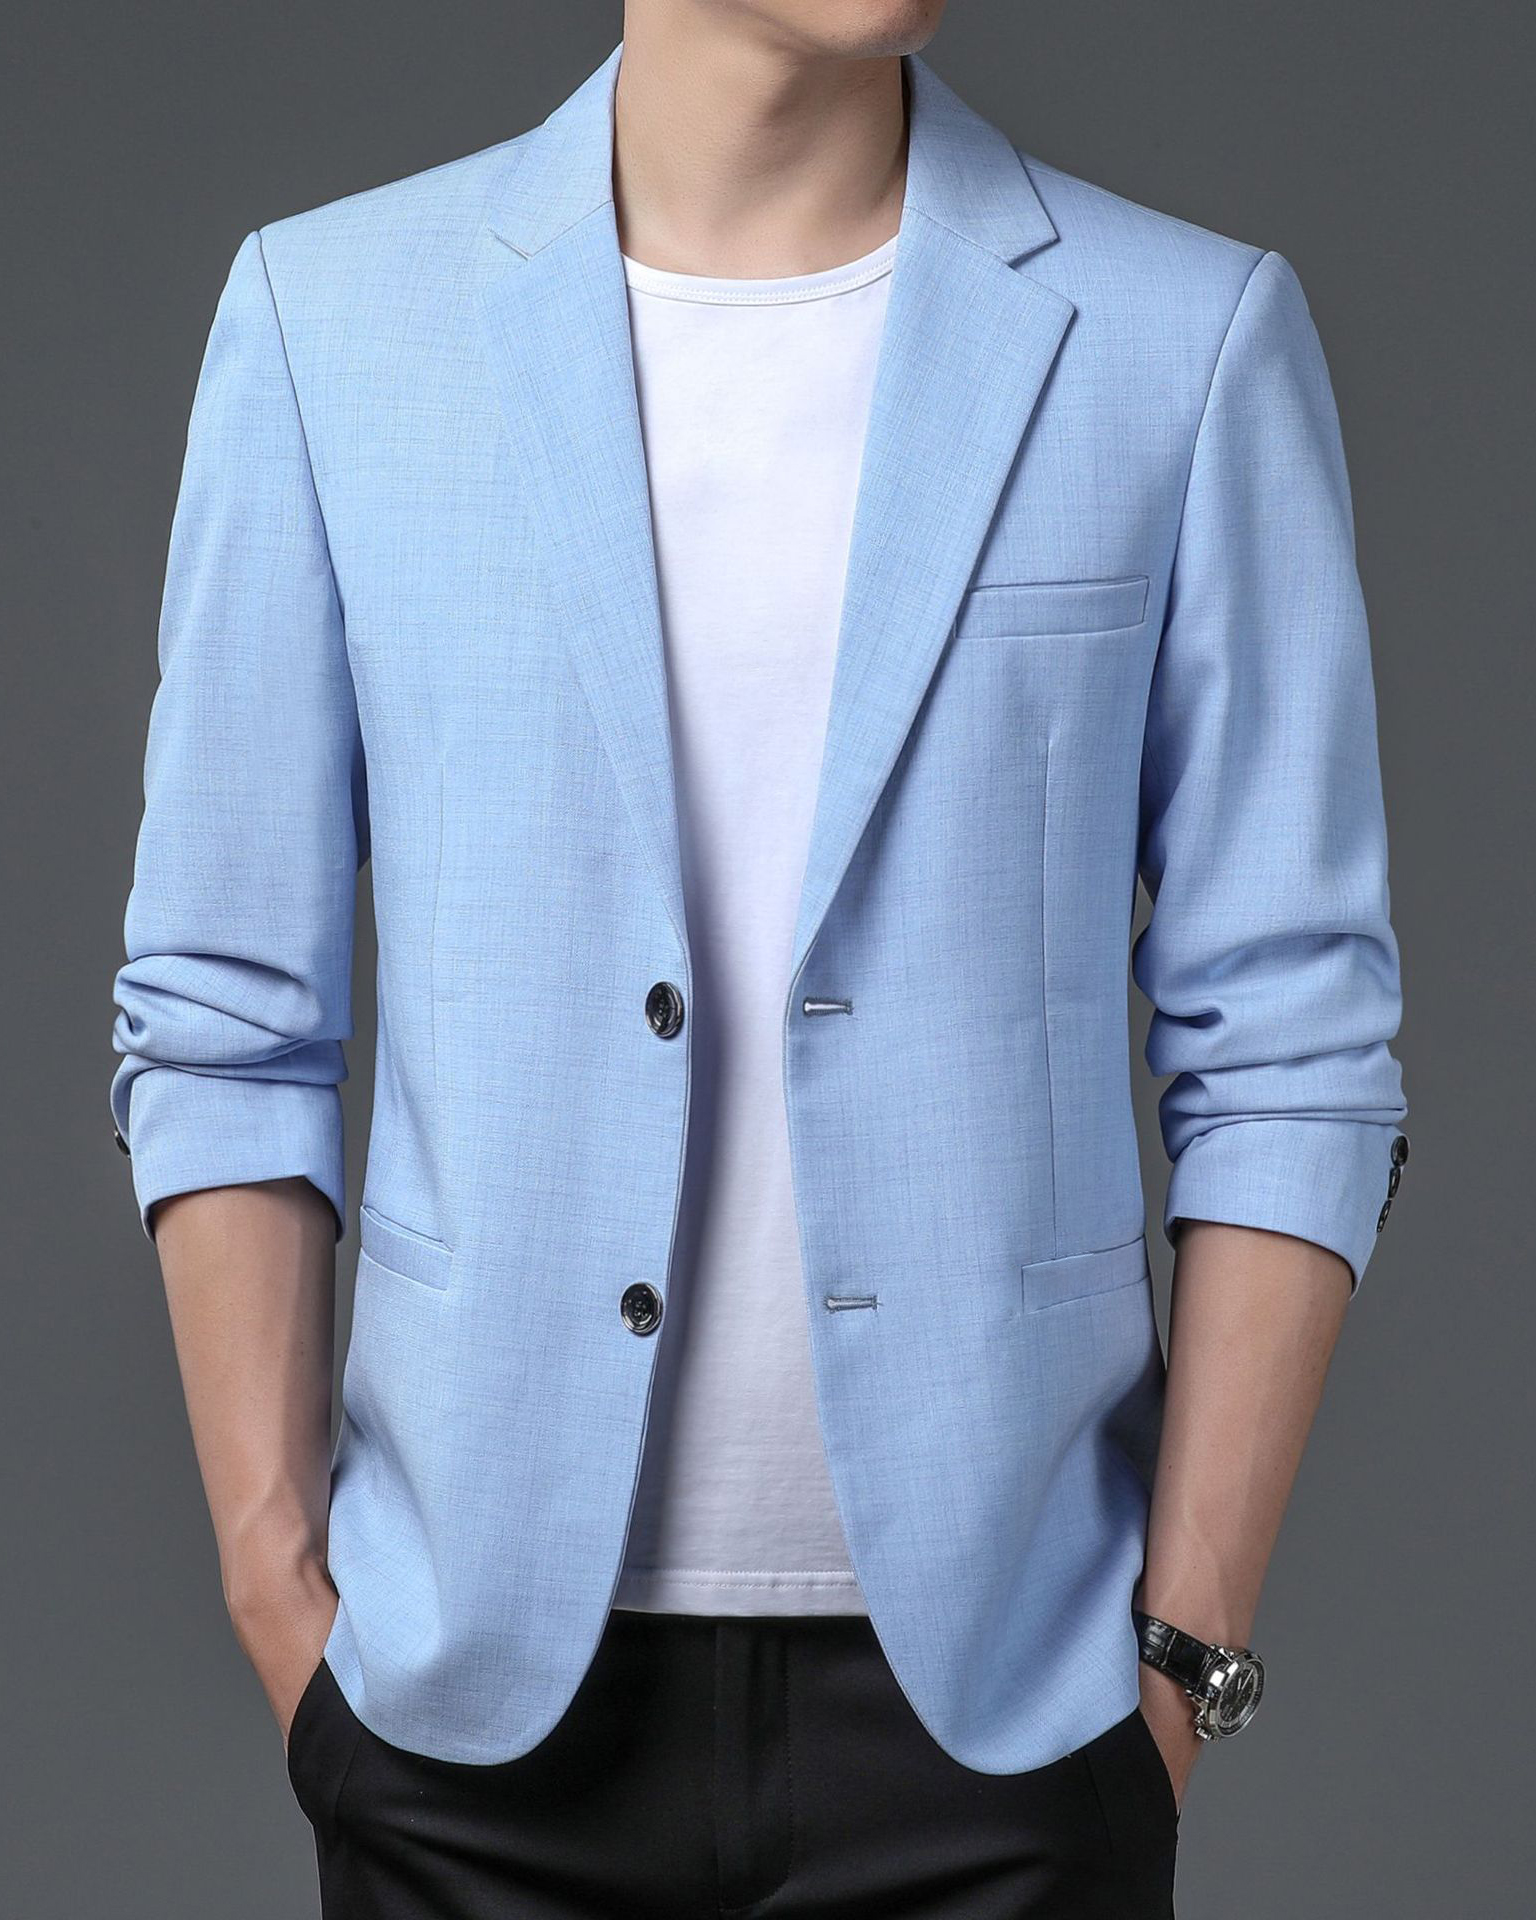 Áo vest áo blazer nam áo khoác 2 cúc xu hướng thời trang giản dị với 2 màu kem và xanh dễ phối đồ - Mã T19